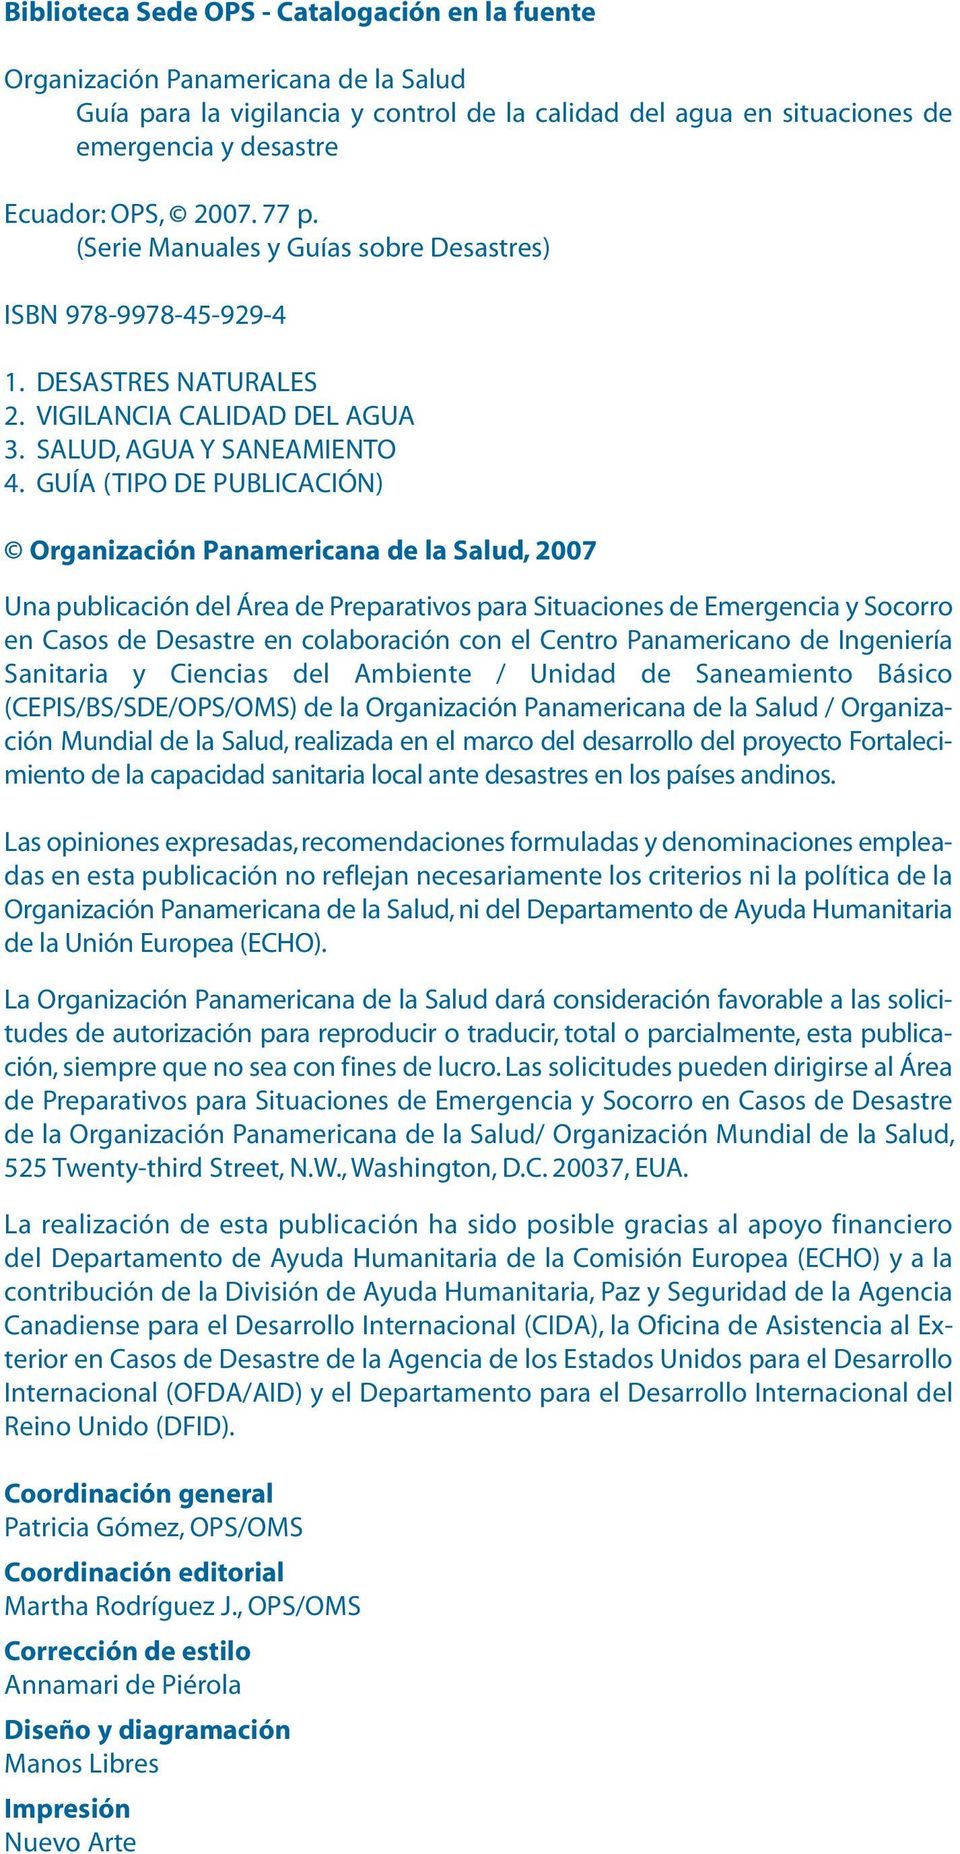 GUÍA (TIPO DE PUBLICACIÓN) Organización Panamericana de la Salud, 2007 Una publicación del Área de Preparativos para Situaciones de Emergencia y Socorro en Casos de Desastre en colaboración con el